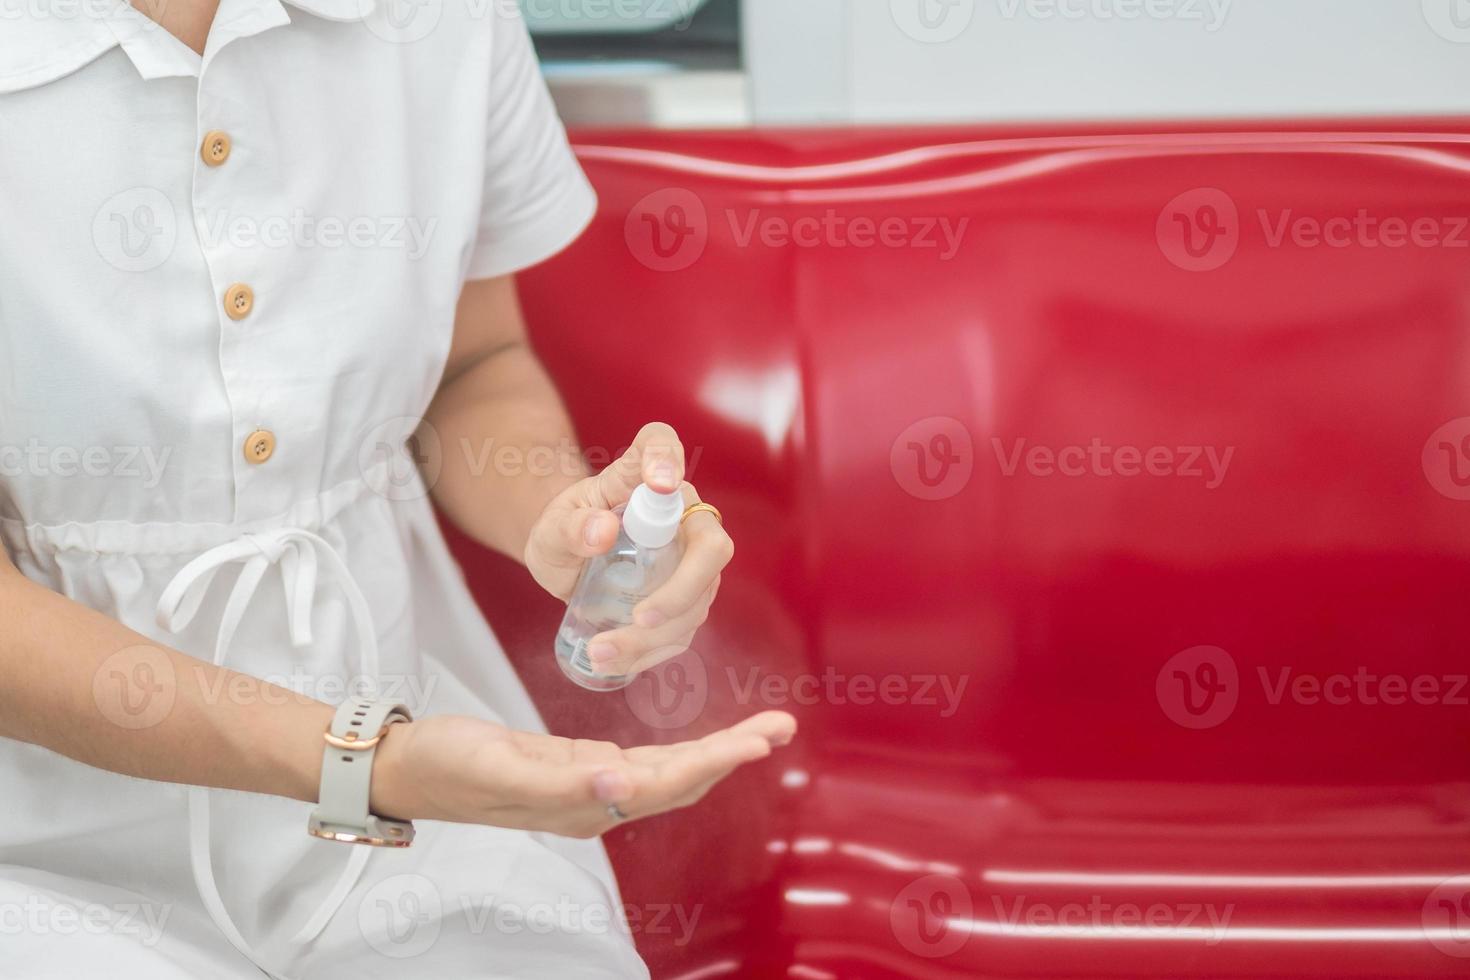 kvinnan rengör handen med spritsprejsaneringsmedel i tåg eller kollektivtrafik, skydd mot coronavirusinfektion. personlig hygien, säkerhet och resetransporter under covid-19 koncept foto